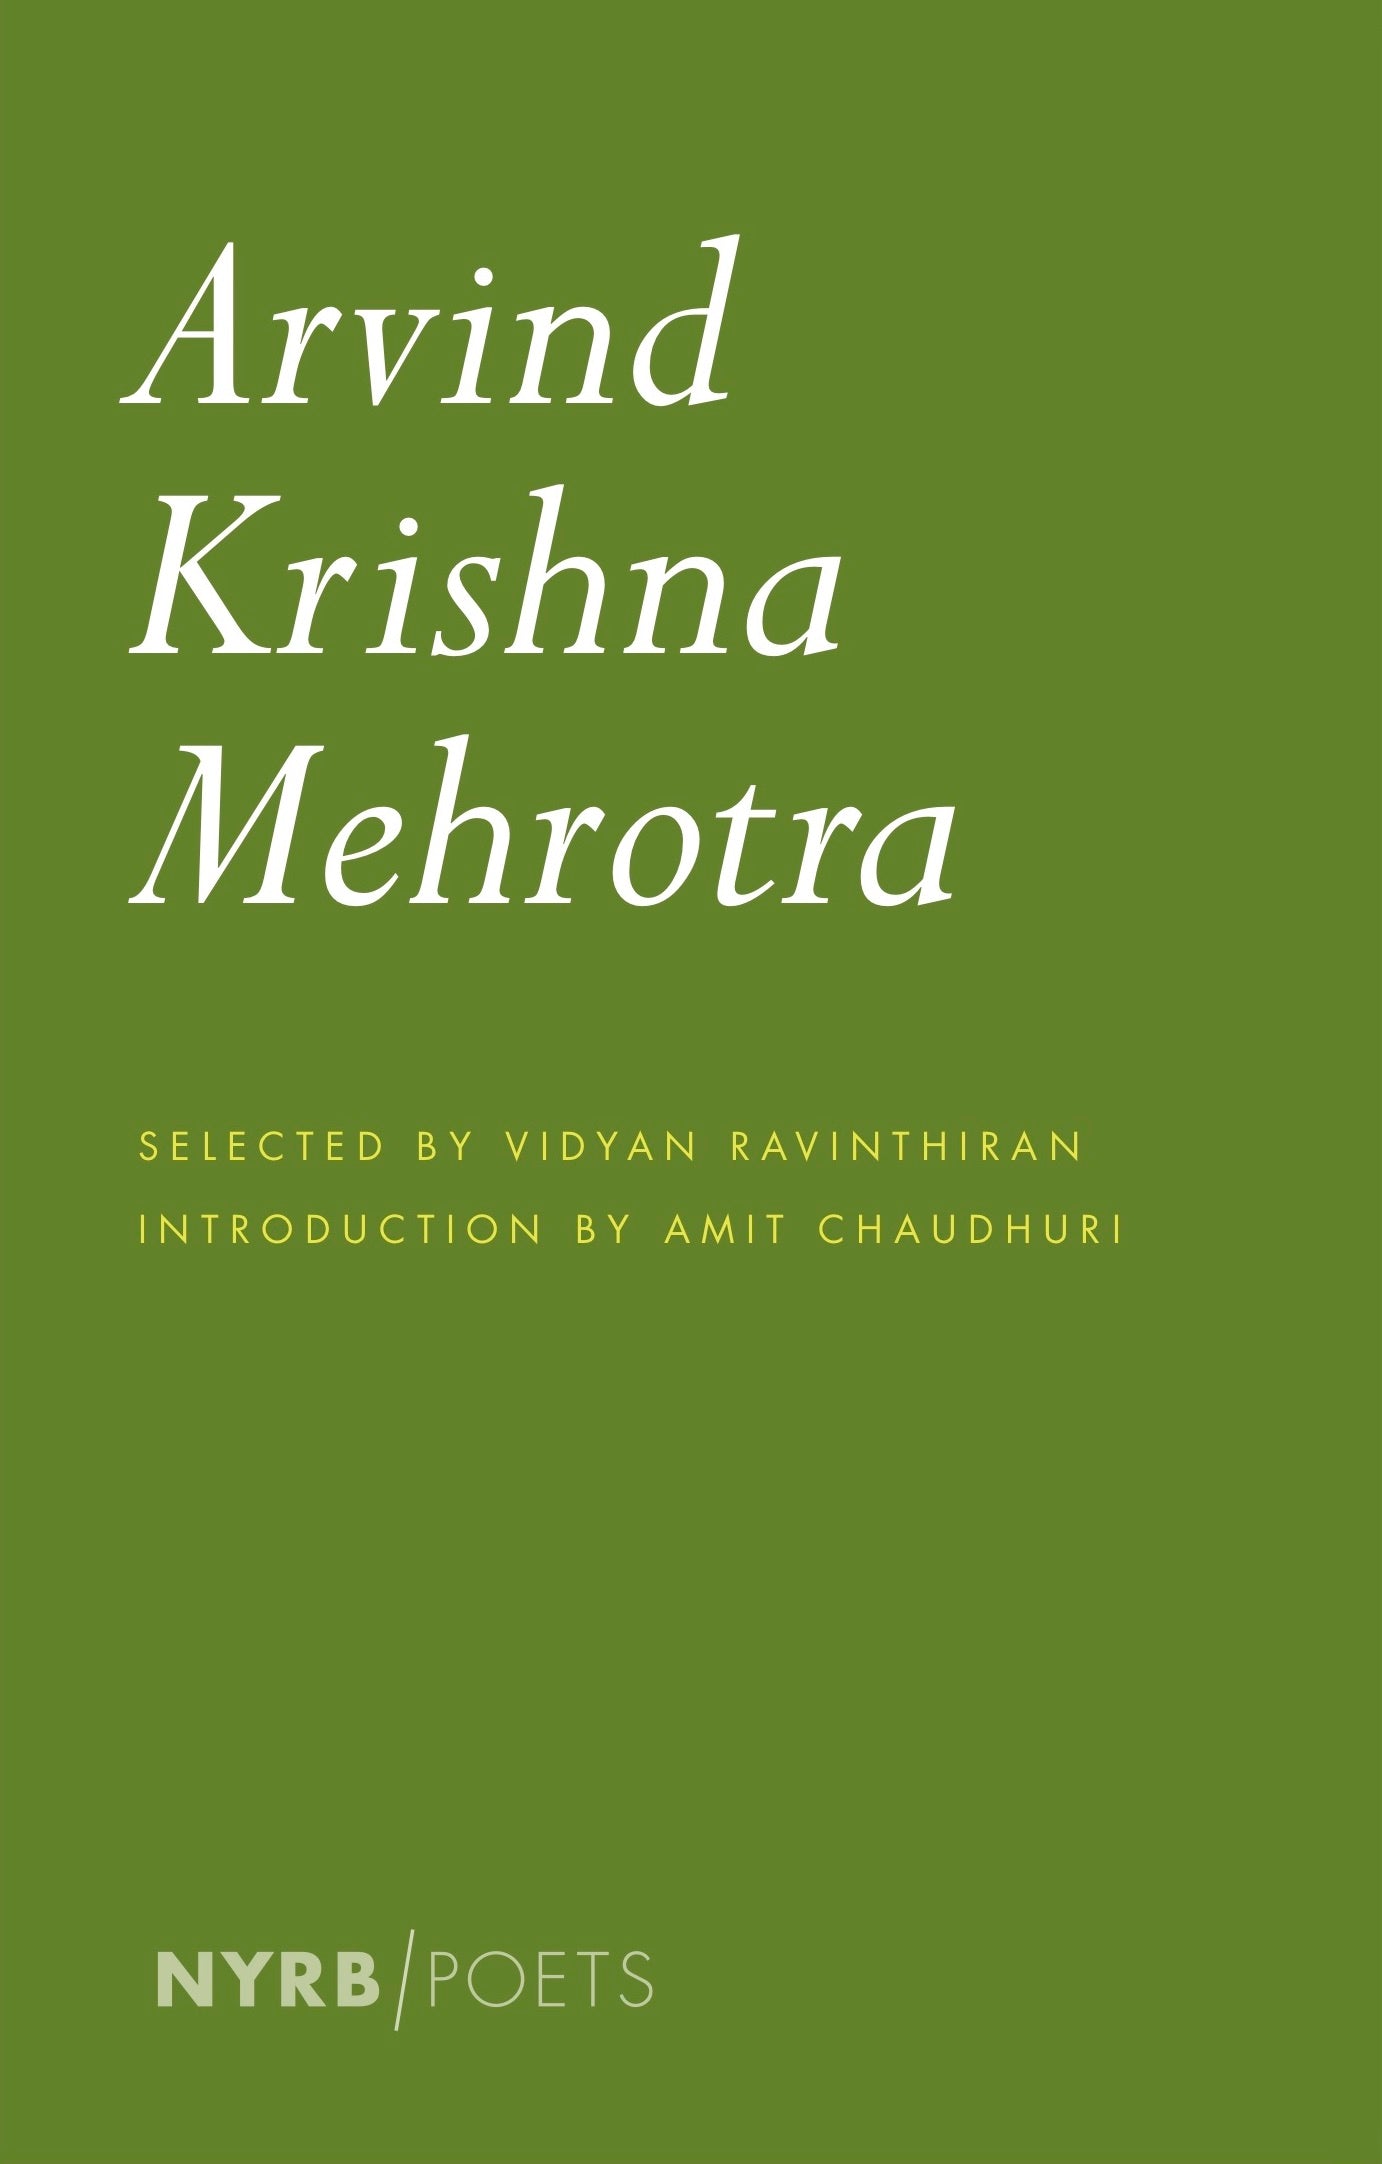 Arvind Krishna Mehrotra